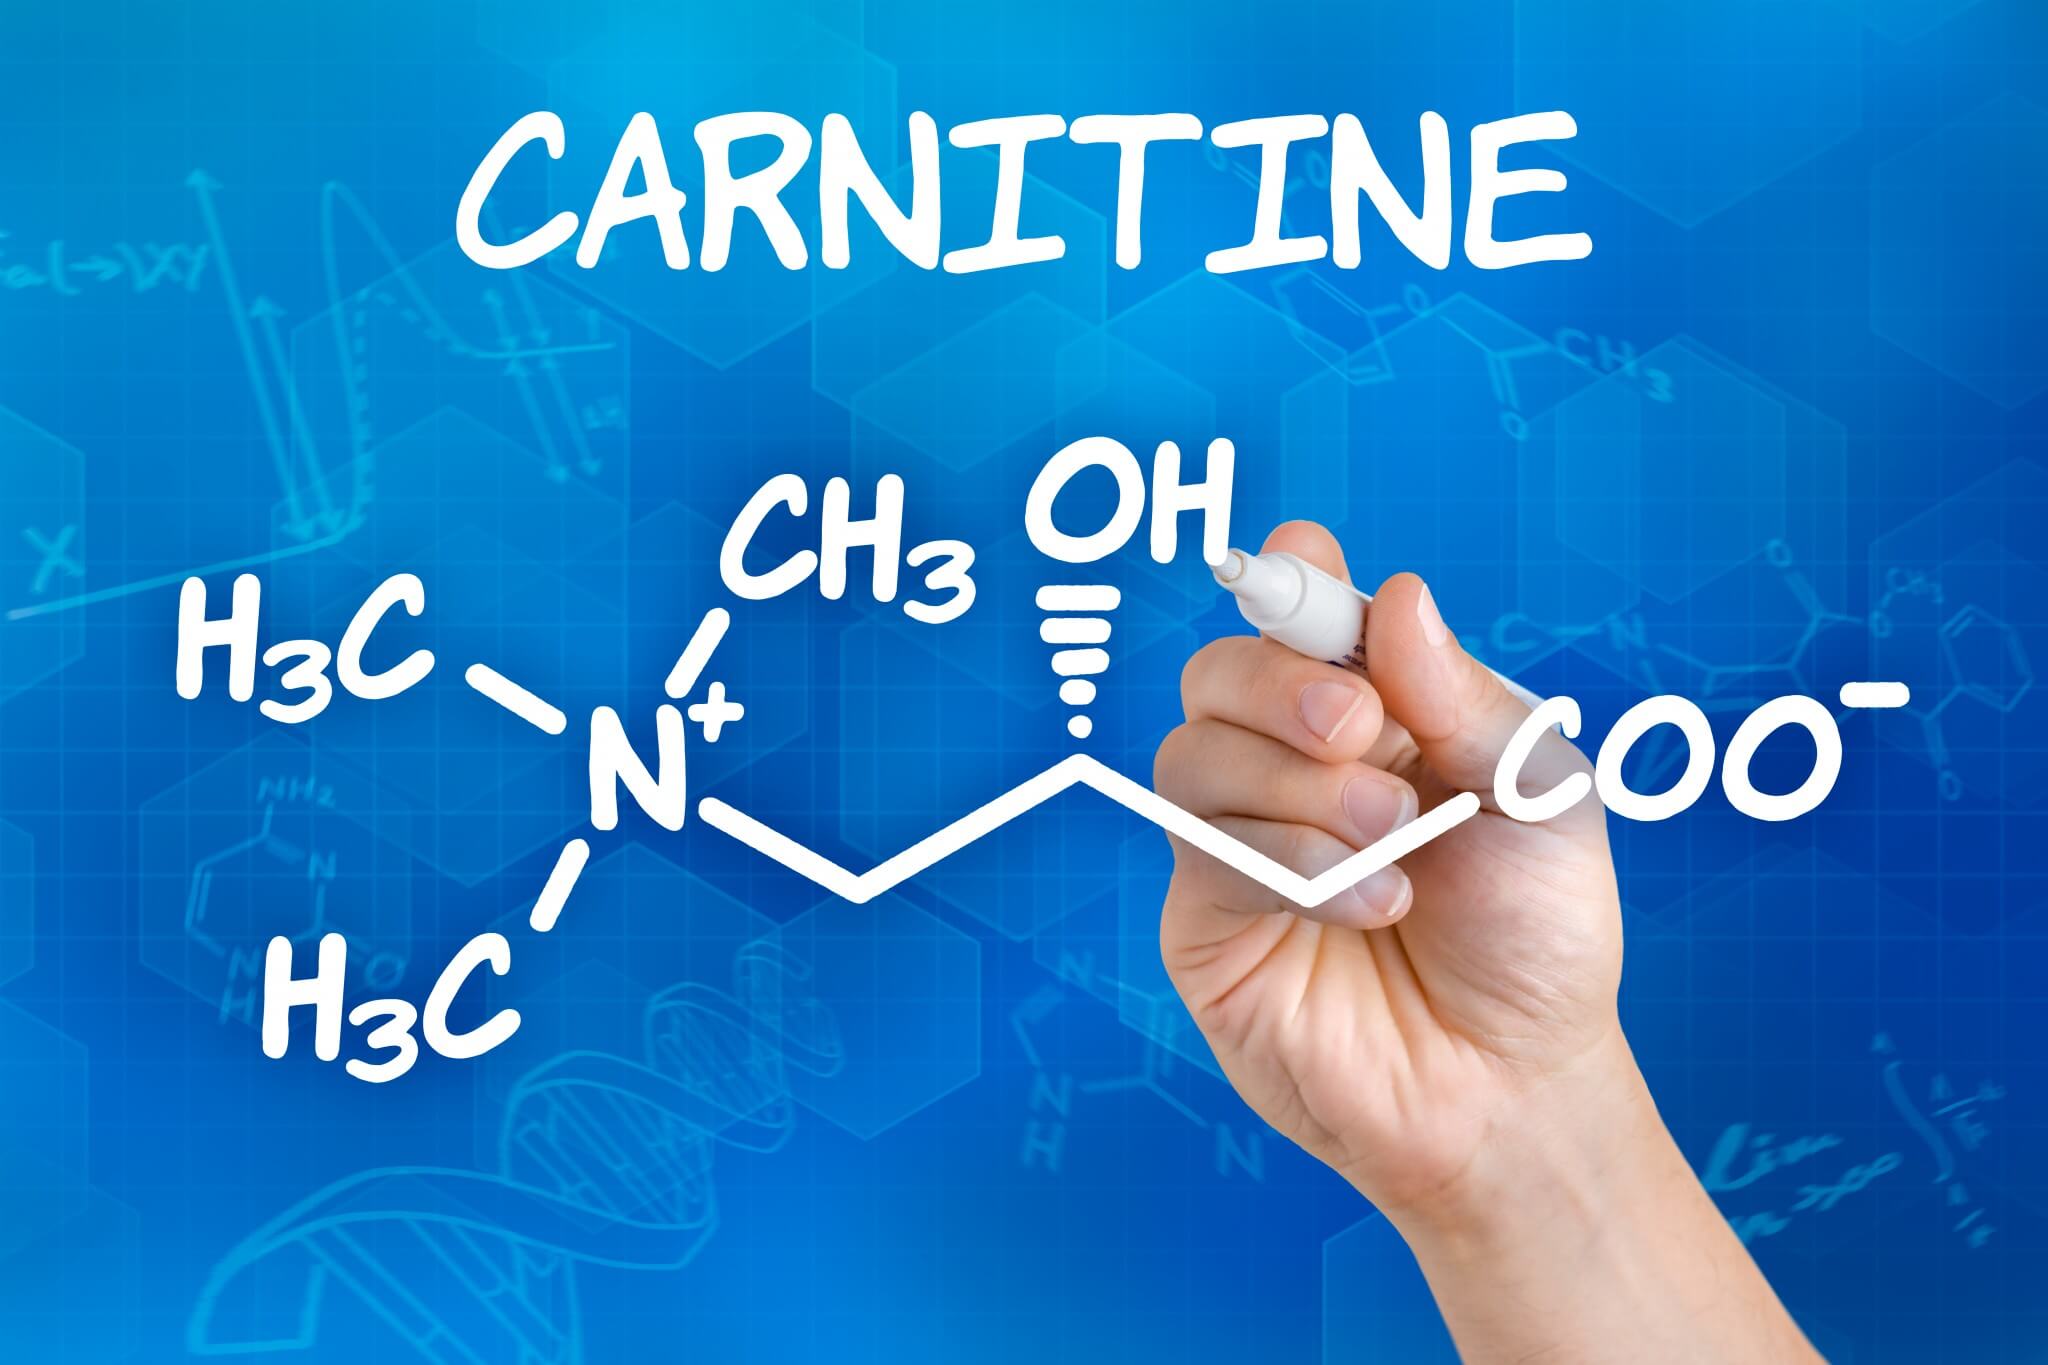 Nová využití karnitinu - zvýšení výkonu a vytrvalosti